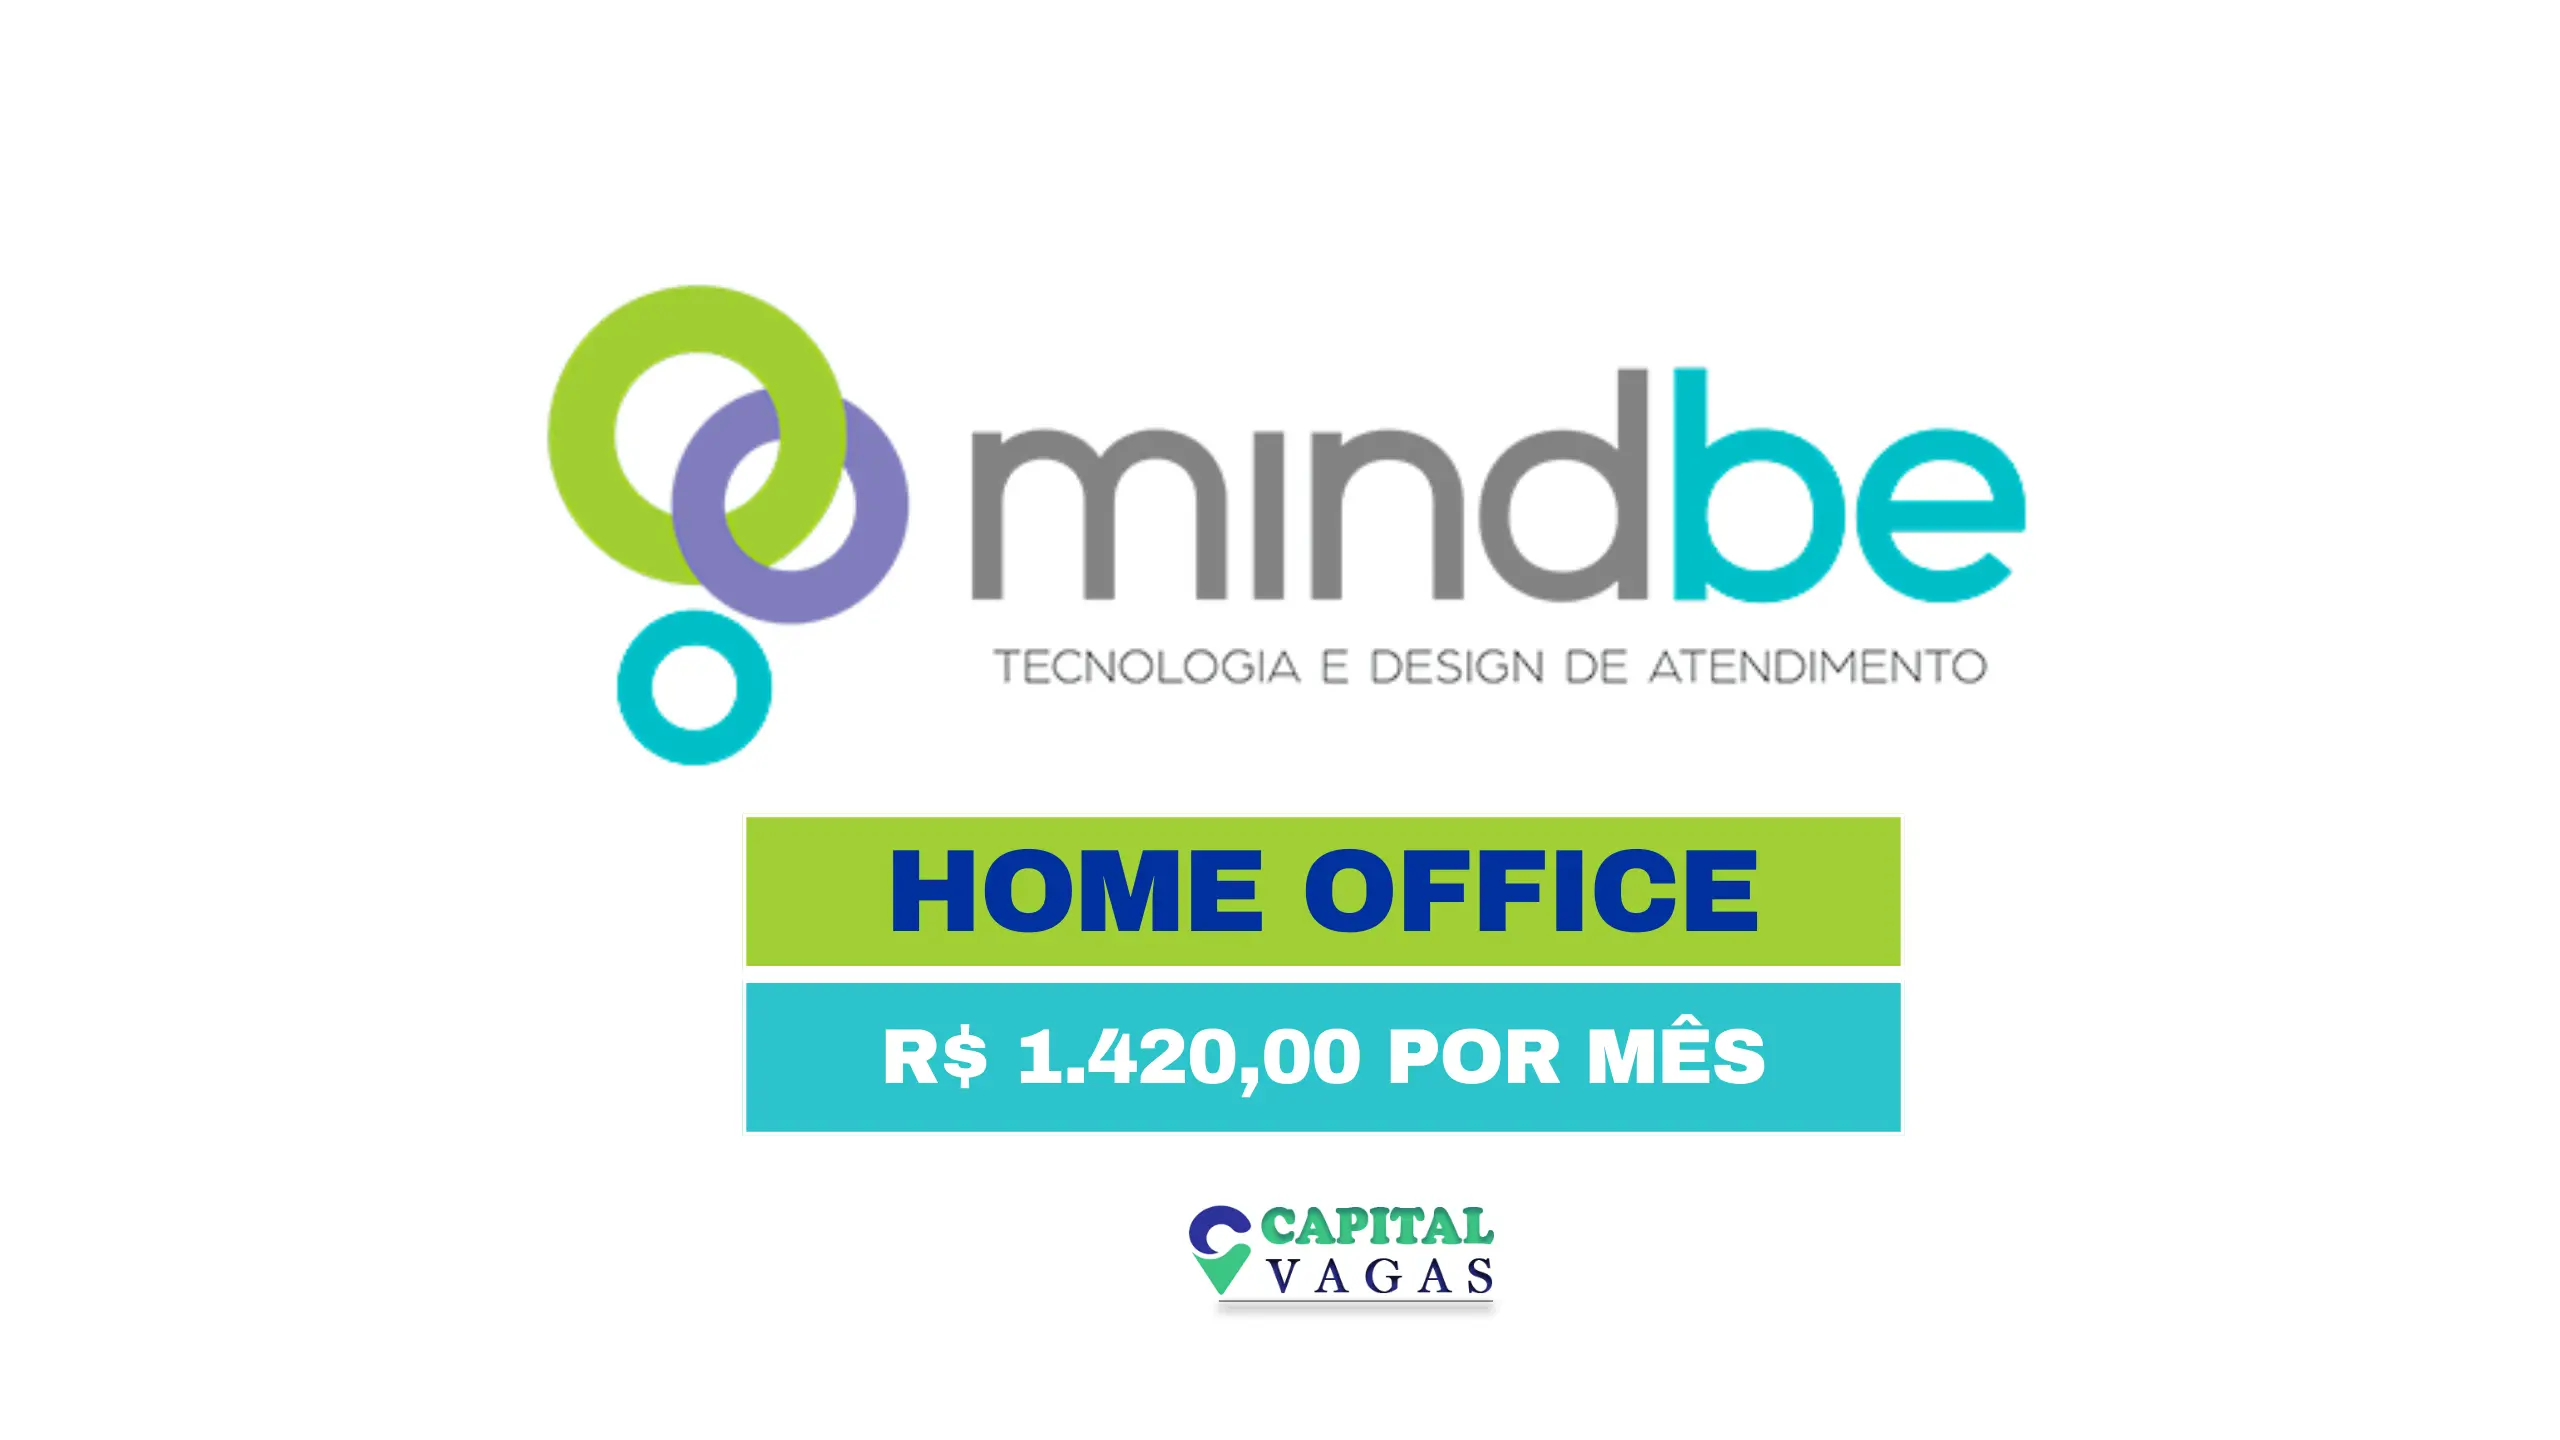 Mindbe abriu vaga HOME OFFICE para Operadores de Telemarketing SAC com salário de R$ 1.4 MIL POR MÊS